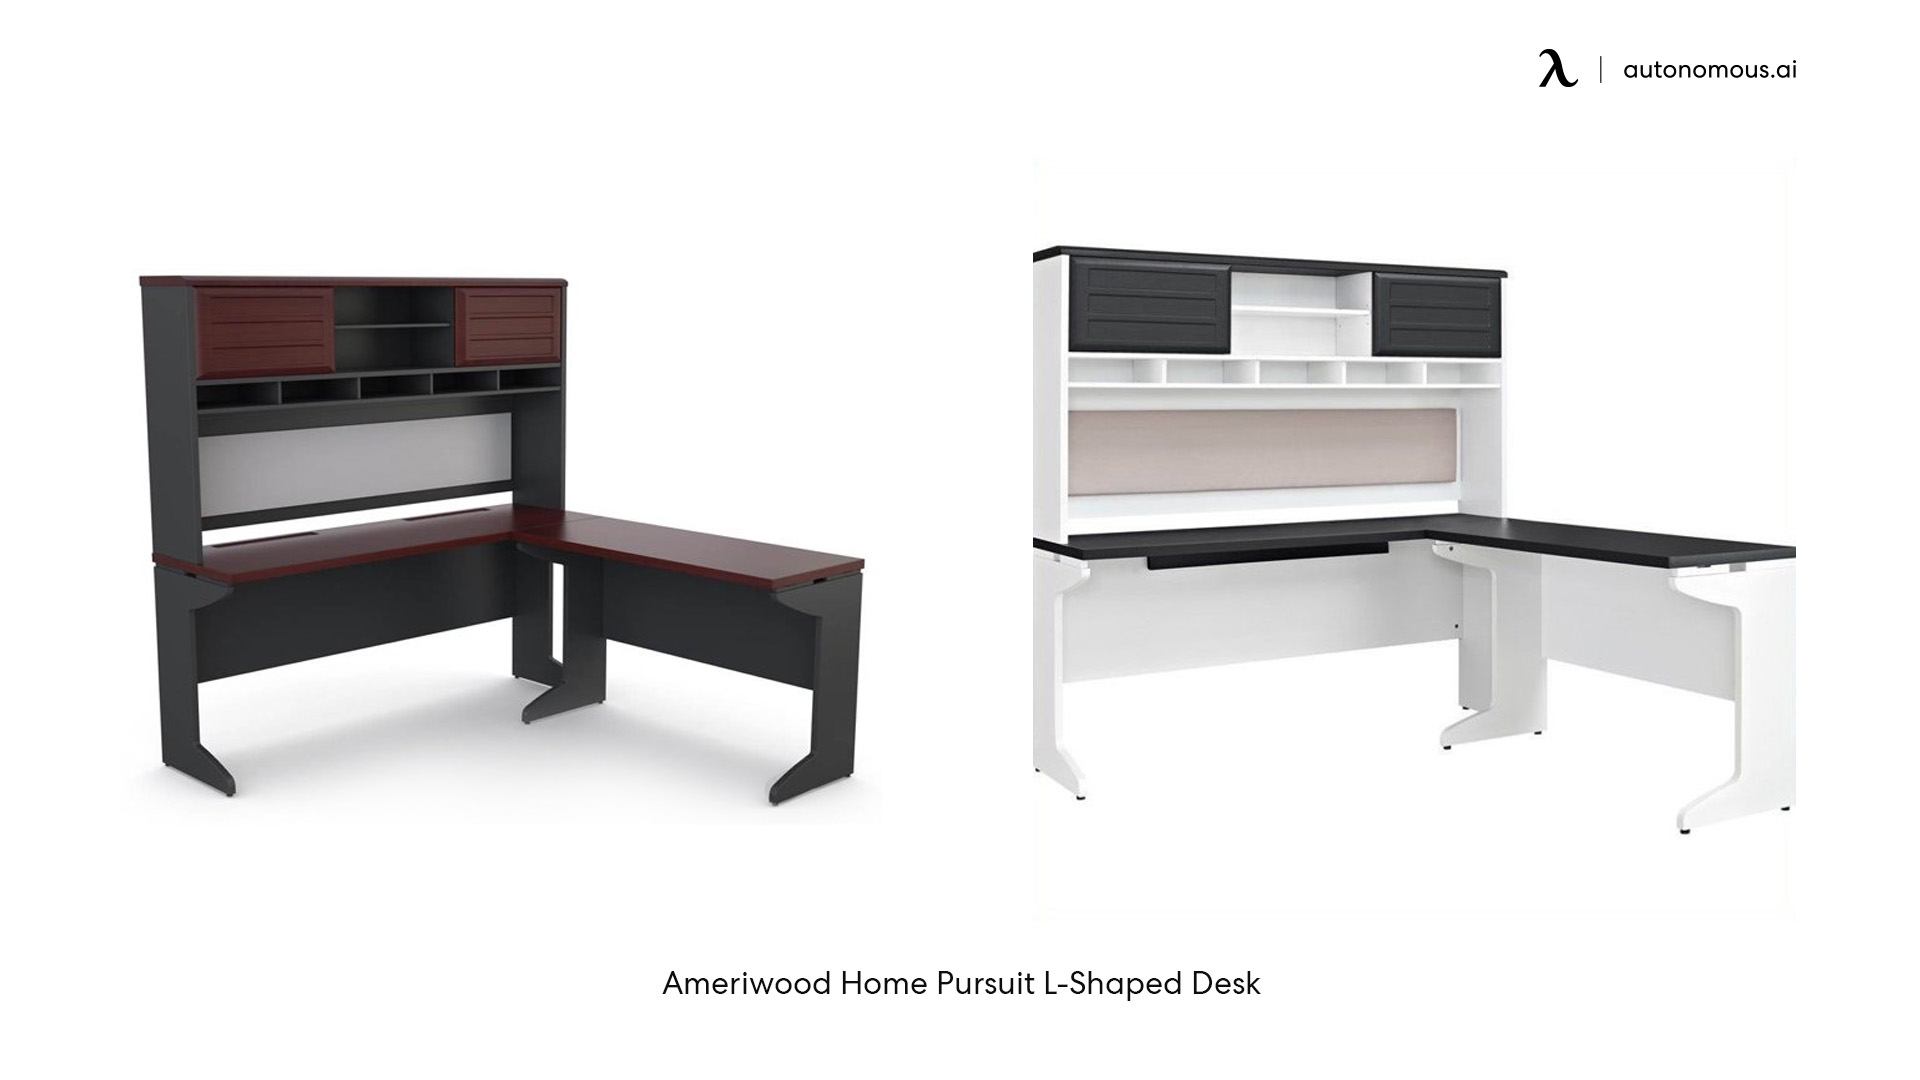 Ameriwood Home Pursuit L-Shaped Desk with Hutch Bundle